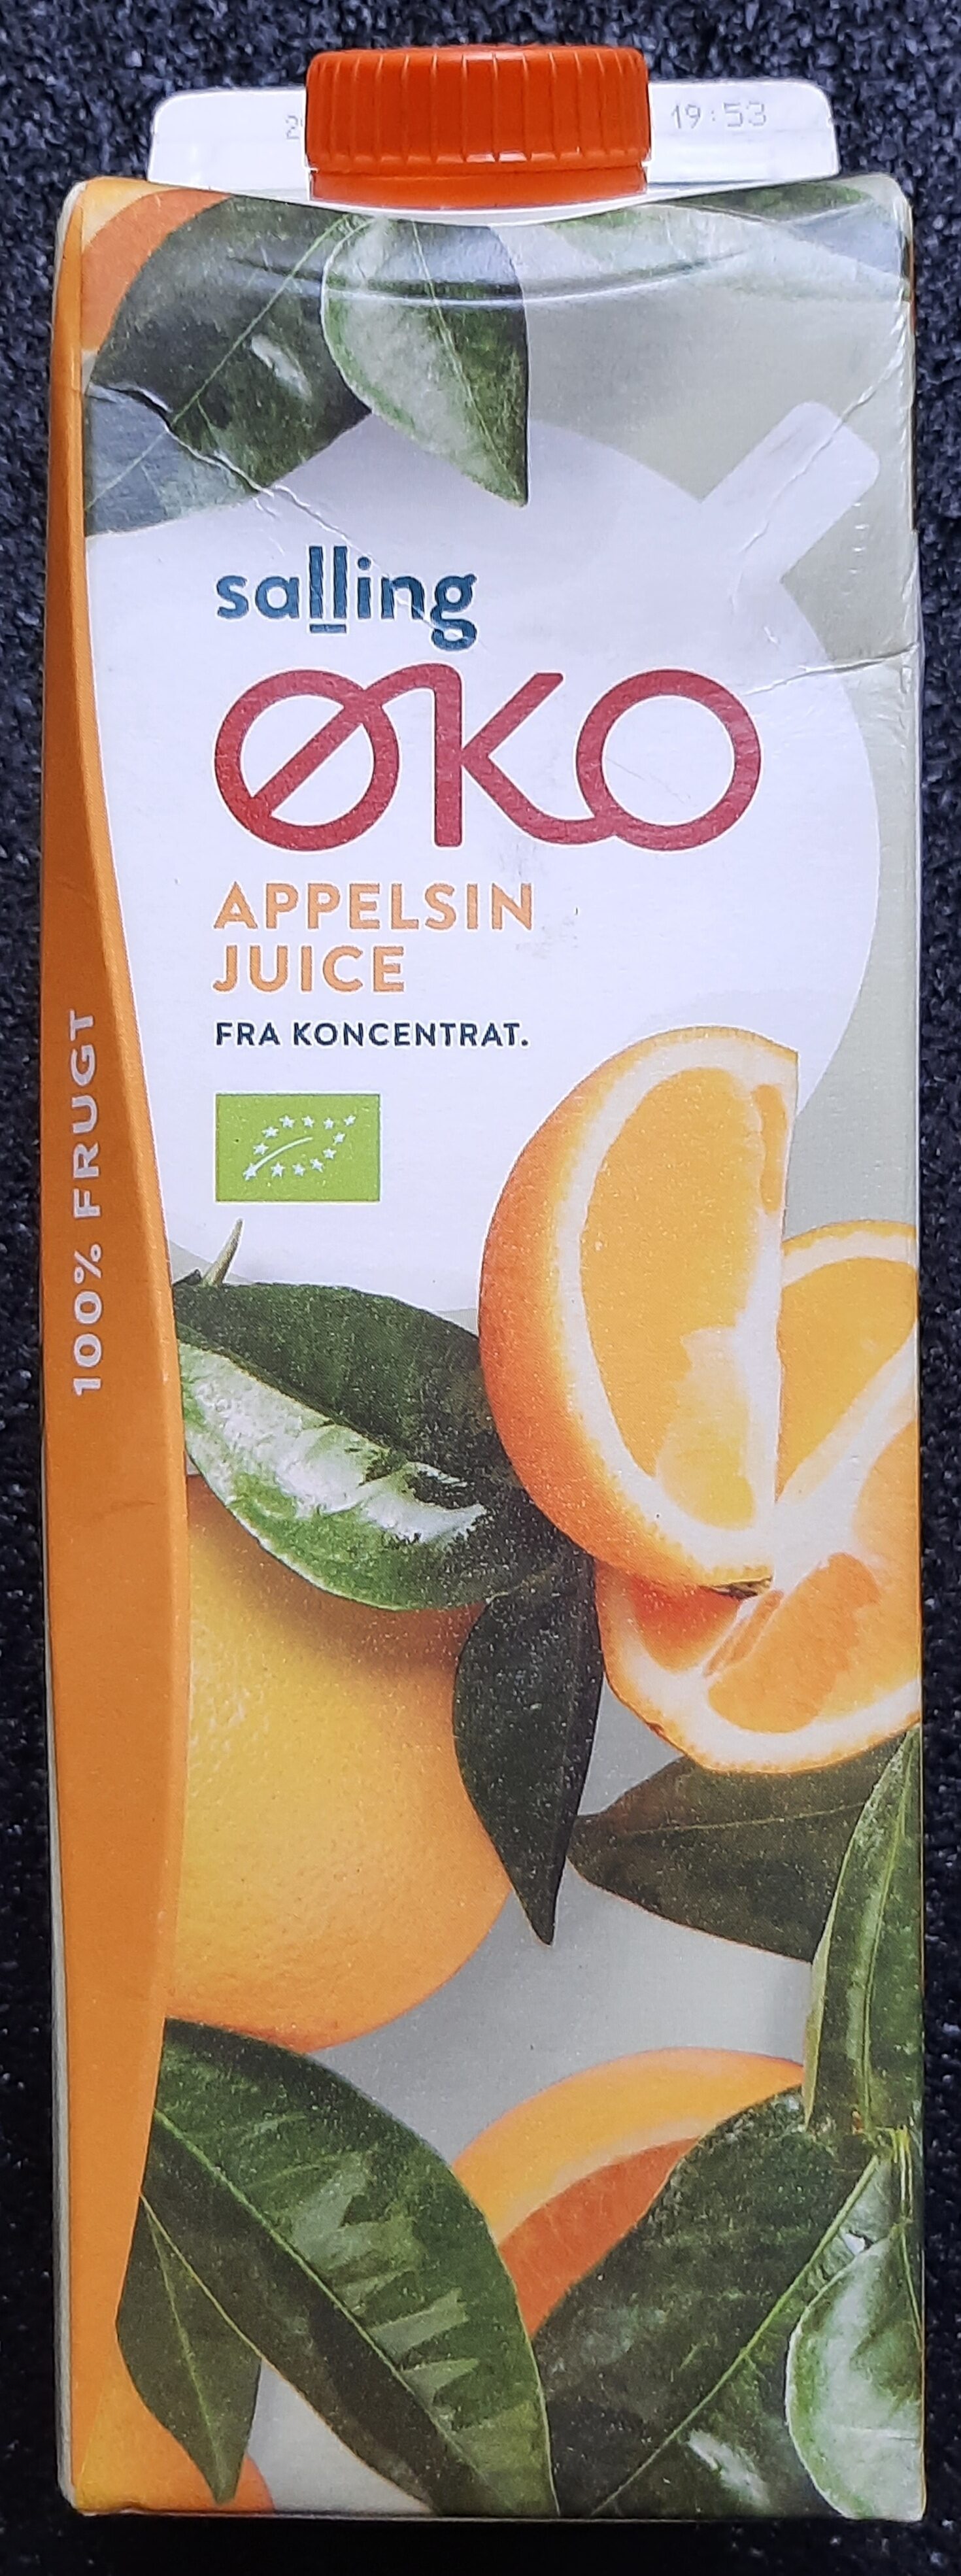 Øko Appelsin Juice - Produkt